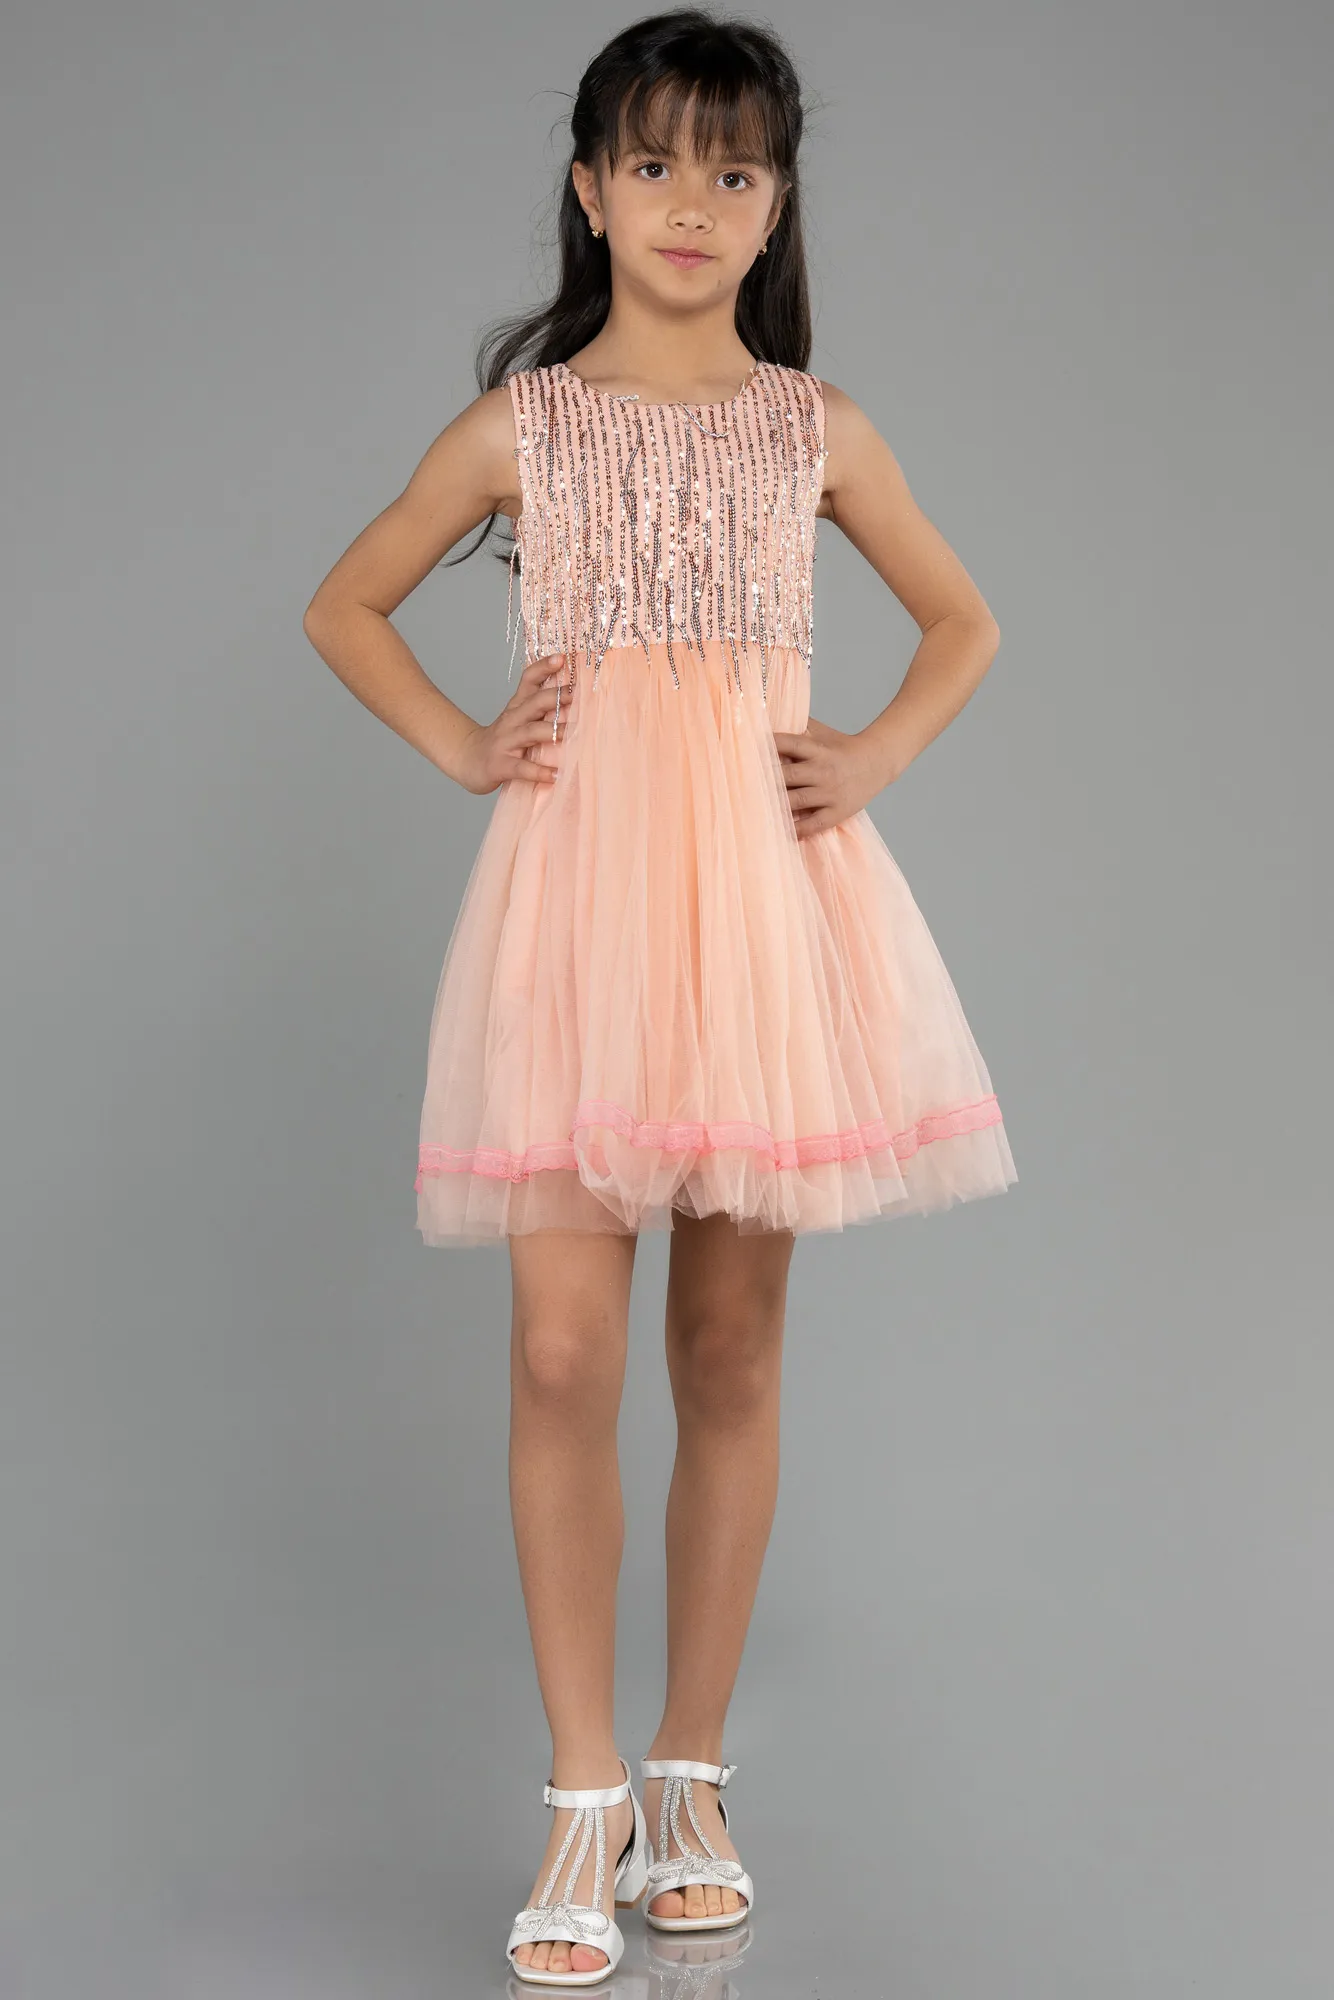 Salmon-Short Girl Dress ABK1973